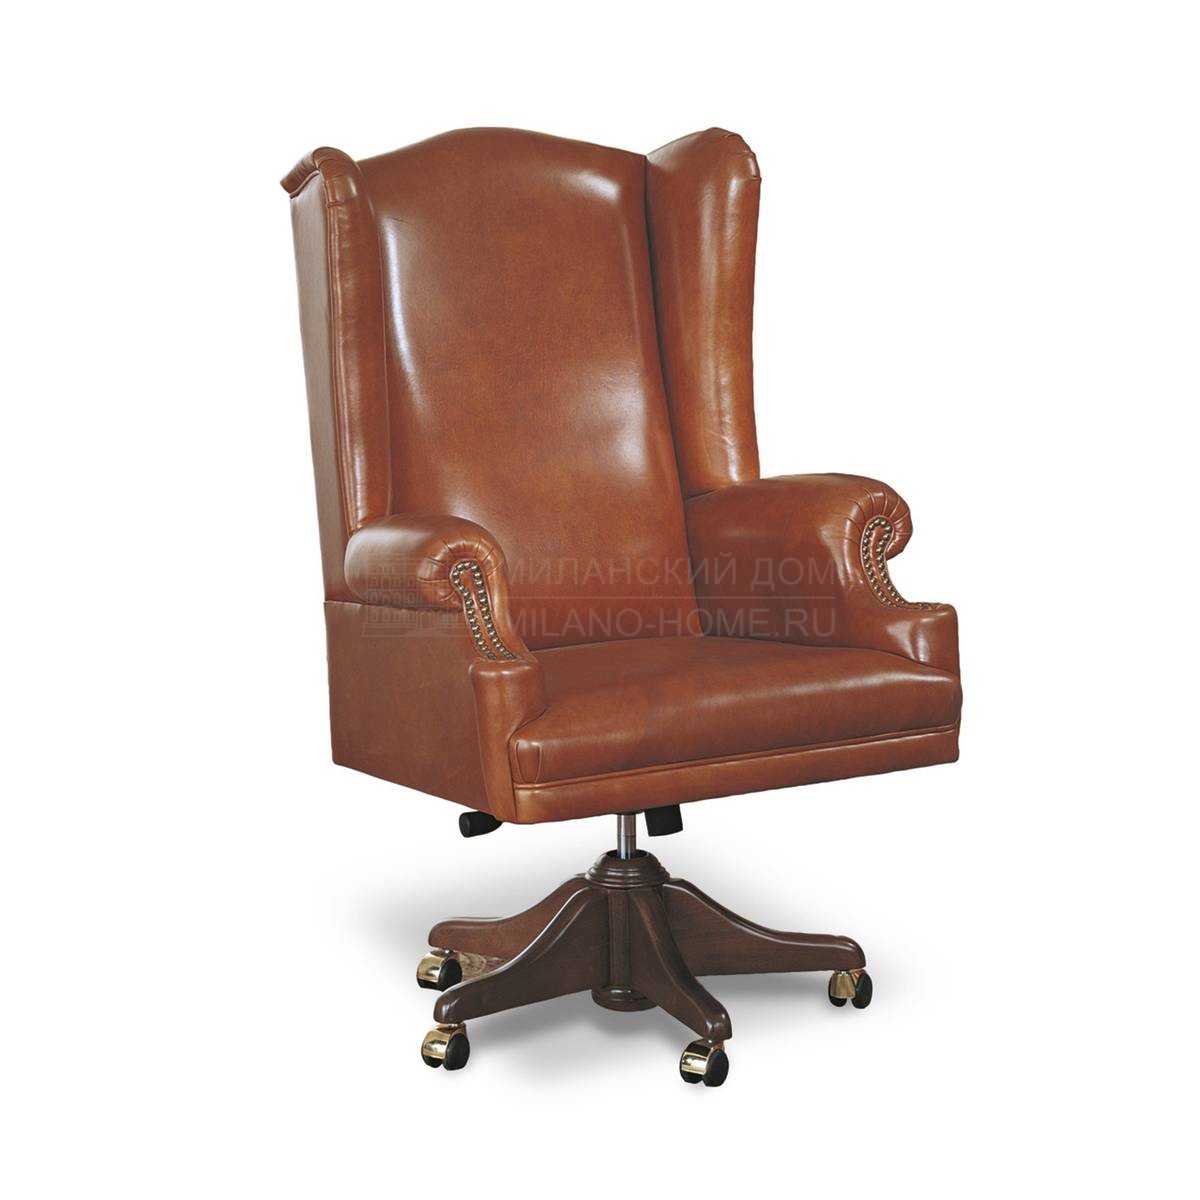 Кожаное кресло Executive / art.P361 из Италии фабрики FRANCESCO MOLON